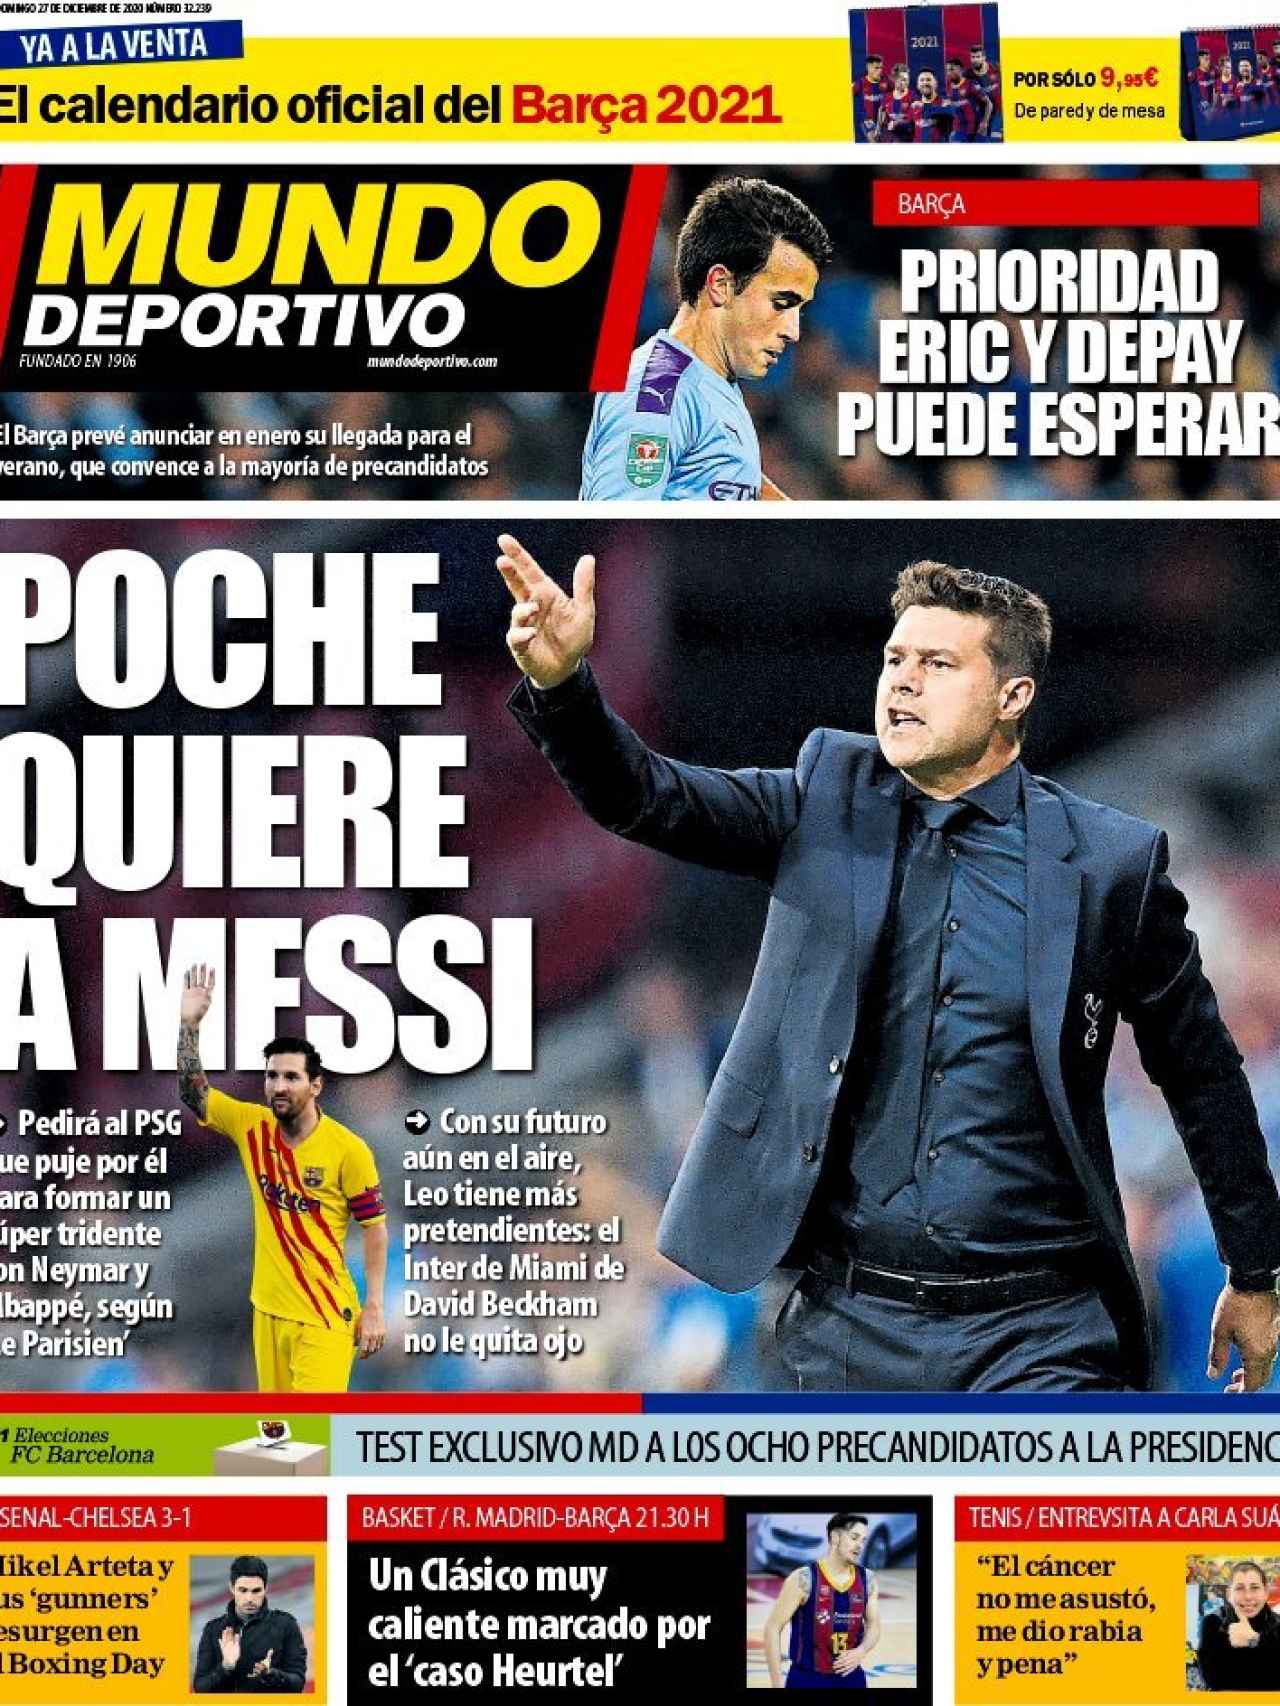 La portada del diario Mundo Deportivo (27/12/2020)